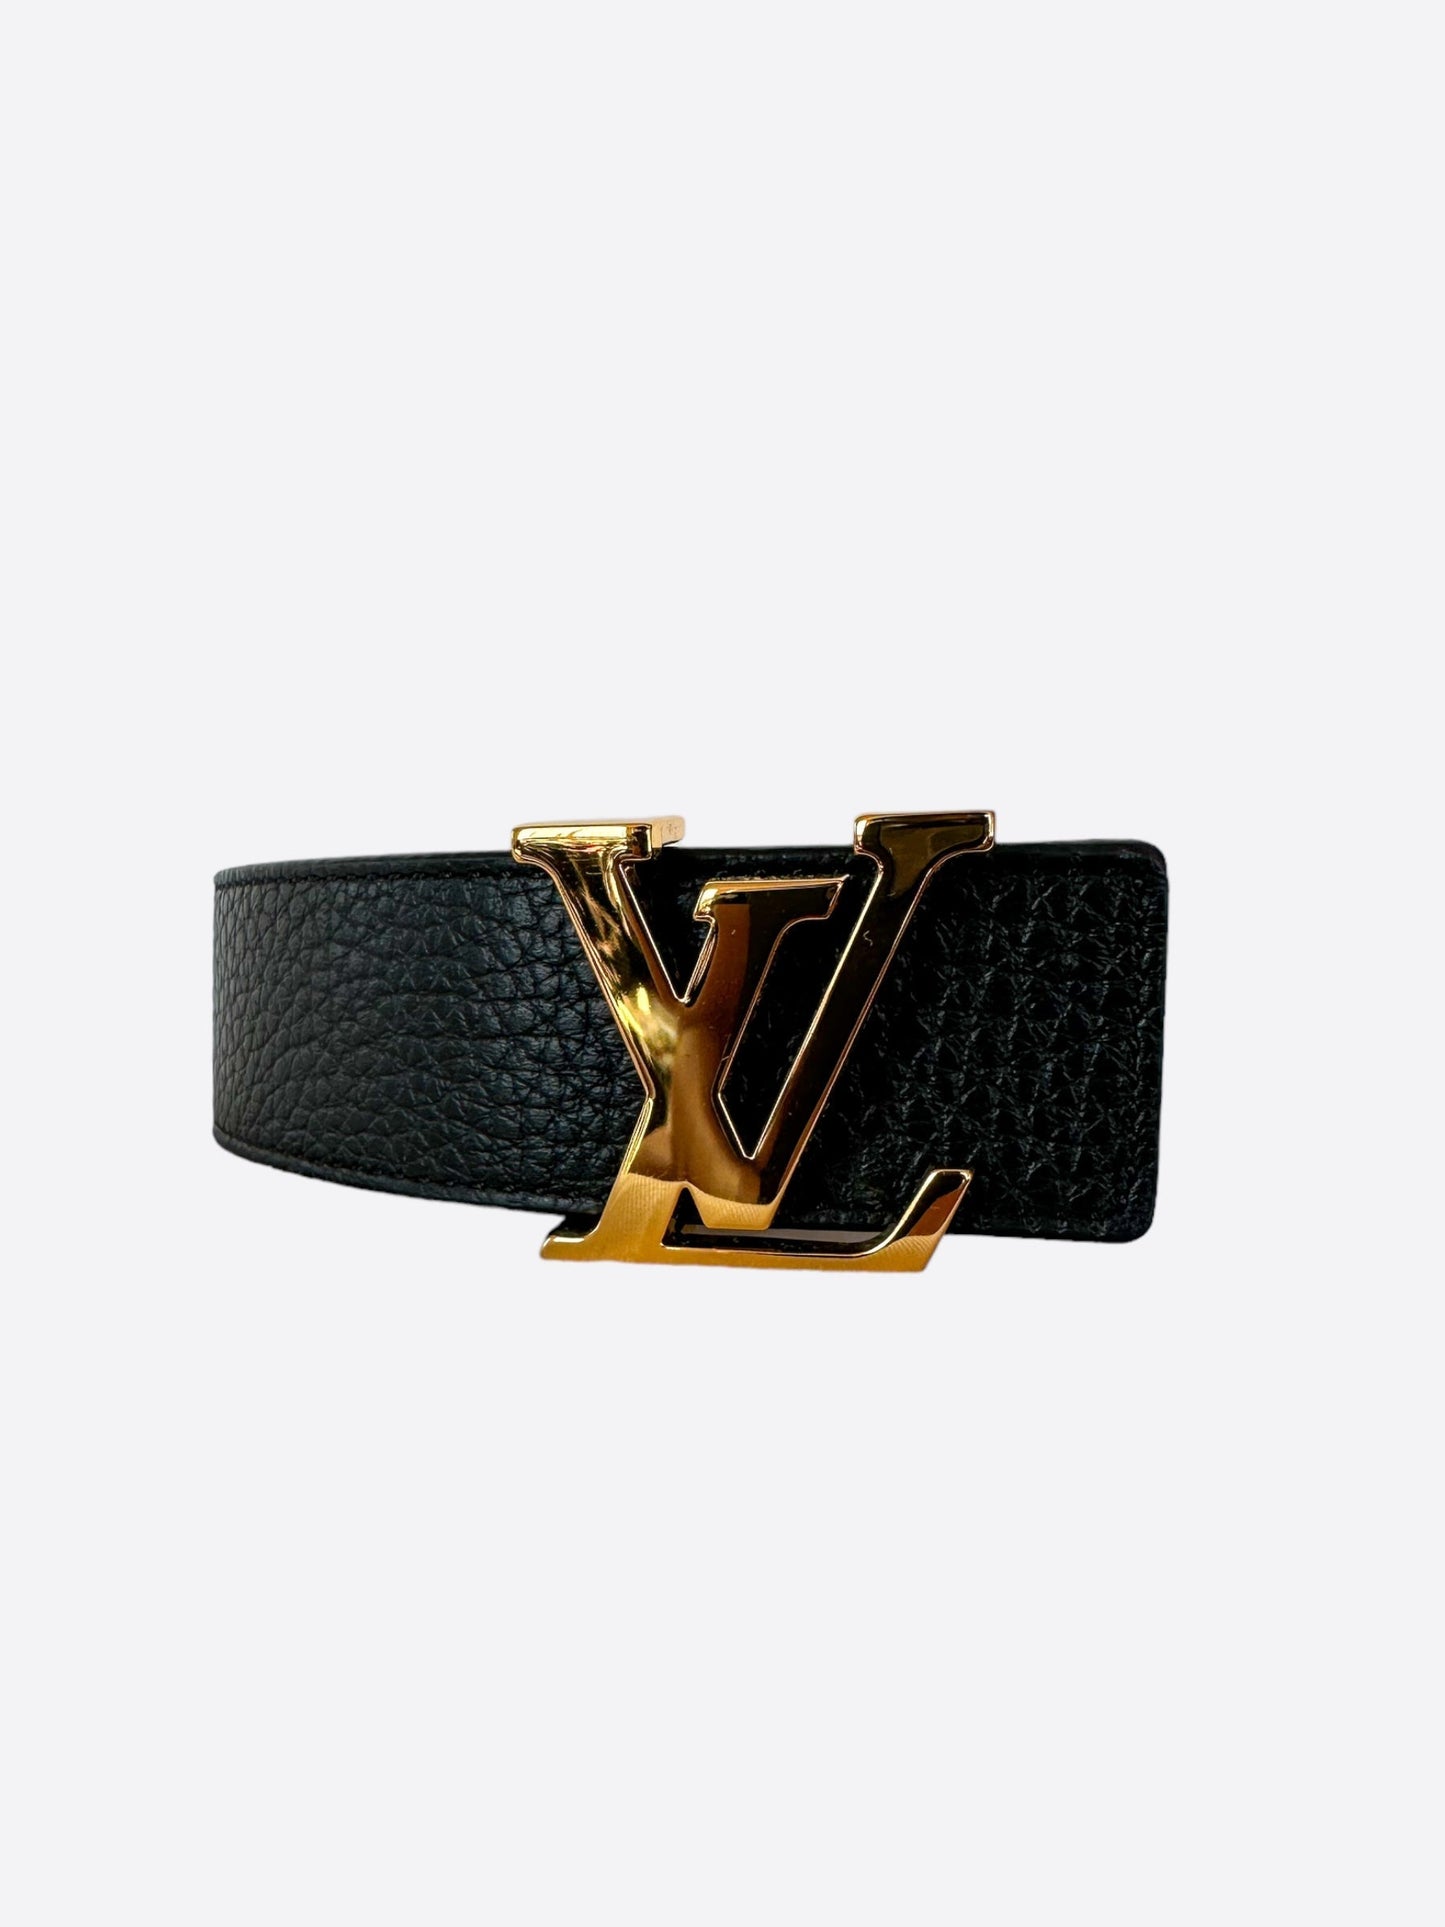 New Authentic Louis Vuitton Reversible Logo 30 Mm Belt